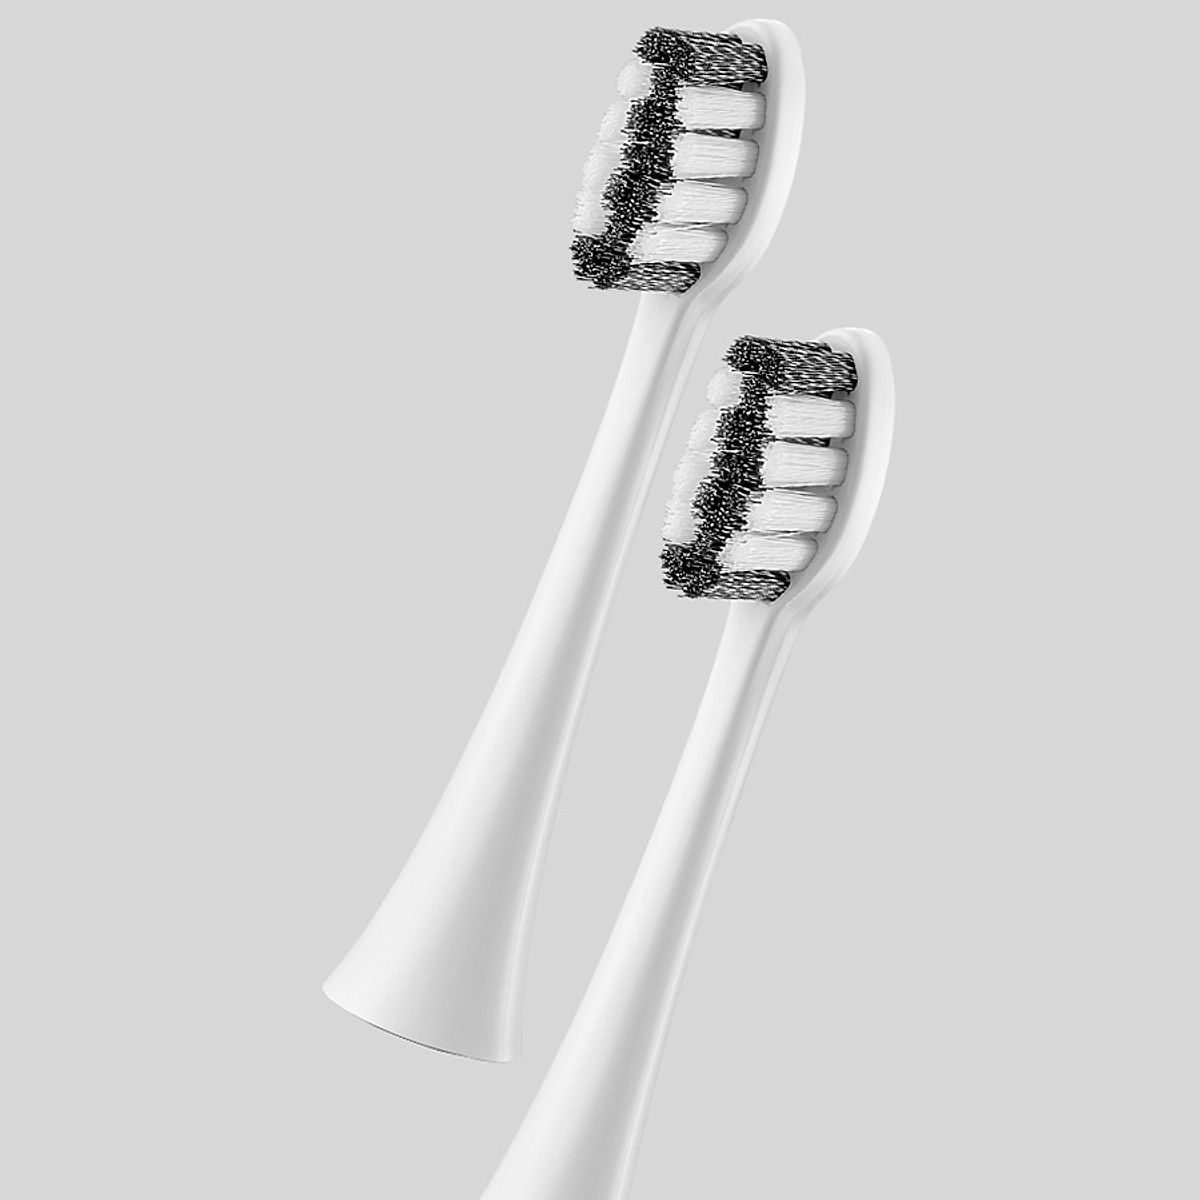 [Made in Korea] Đầu Bàn Chải Điện Electric Toothbrush Heads ENR546WHT (4pcs) - Màu Trắng